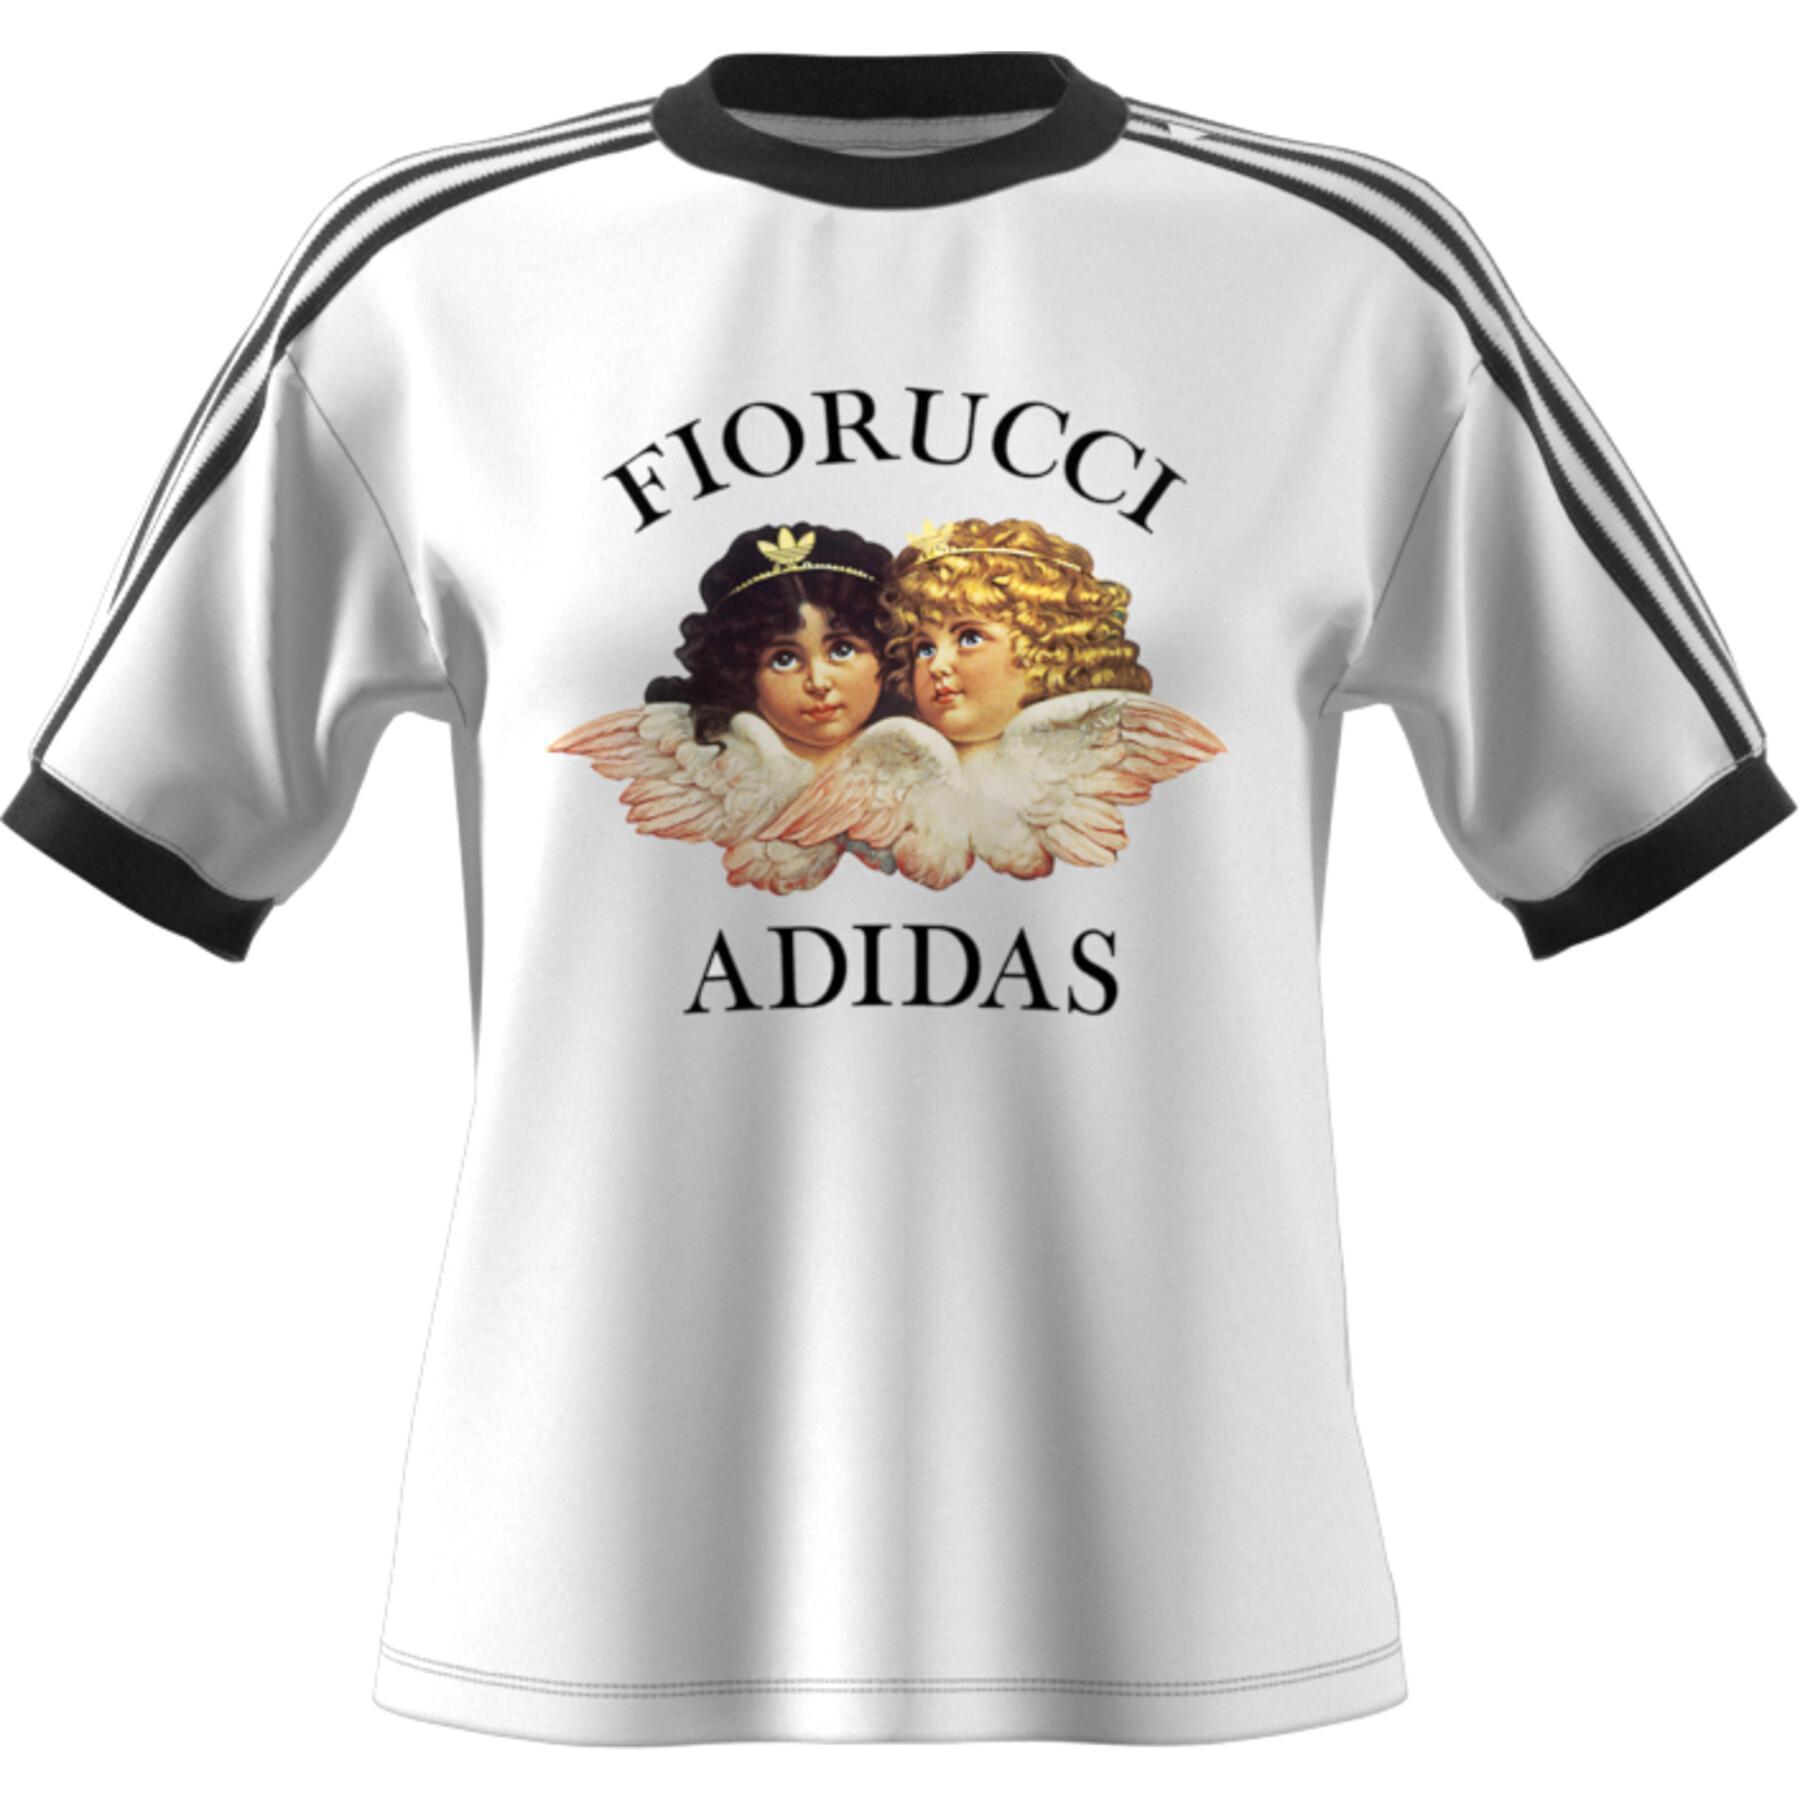 Camiseta Feminina adidas fiorucci